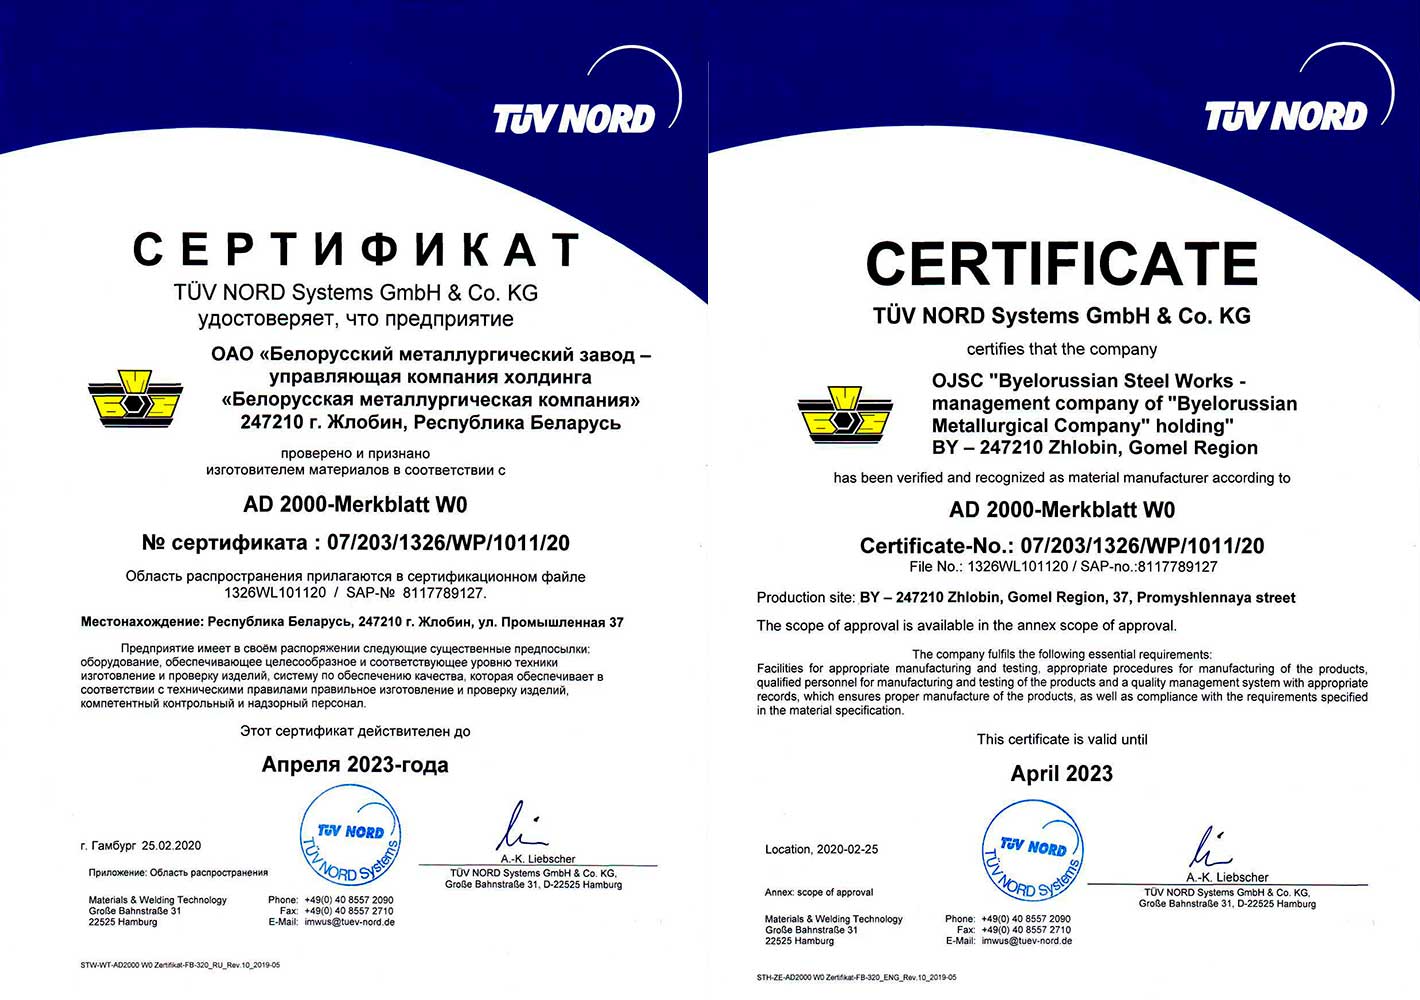 Сертификат № 07/203/1326/WP/1011/20 (TUV NORD Systems, Германия) на производство горячекатаного сортового проката и бесшовных труб из ферритных материалов в соответствии с AD 2000 Merkblatt W0